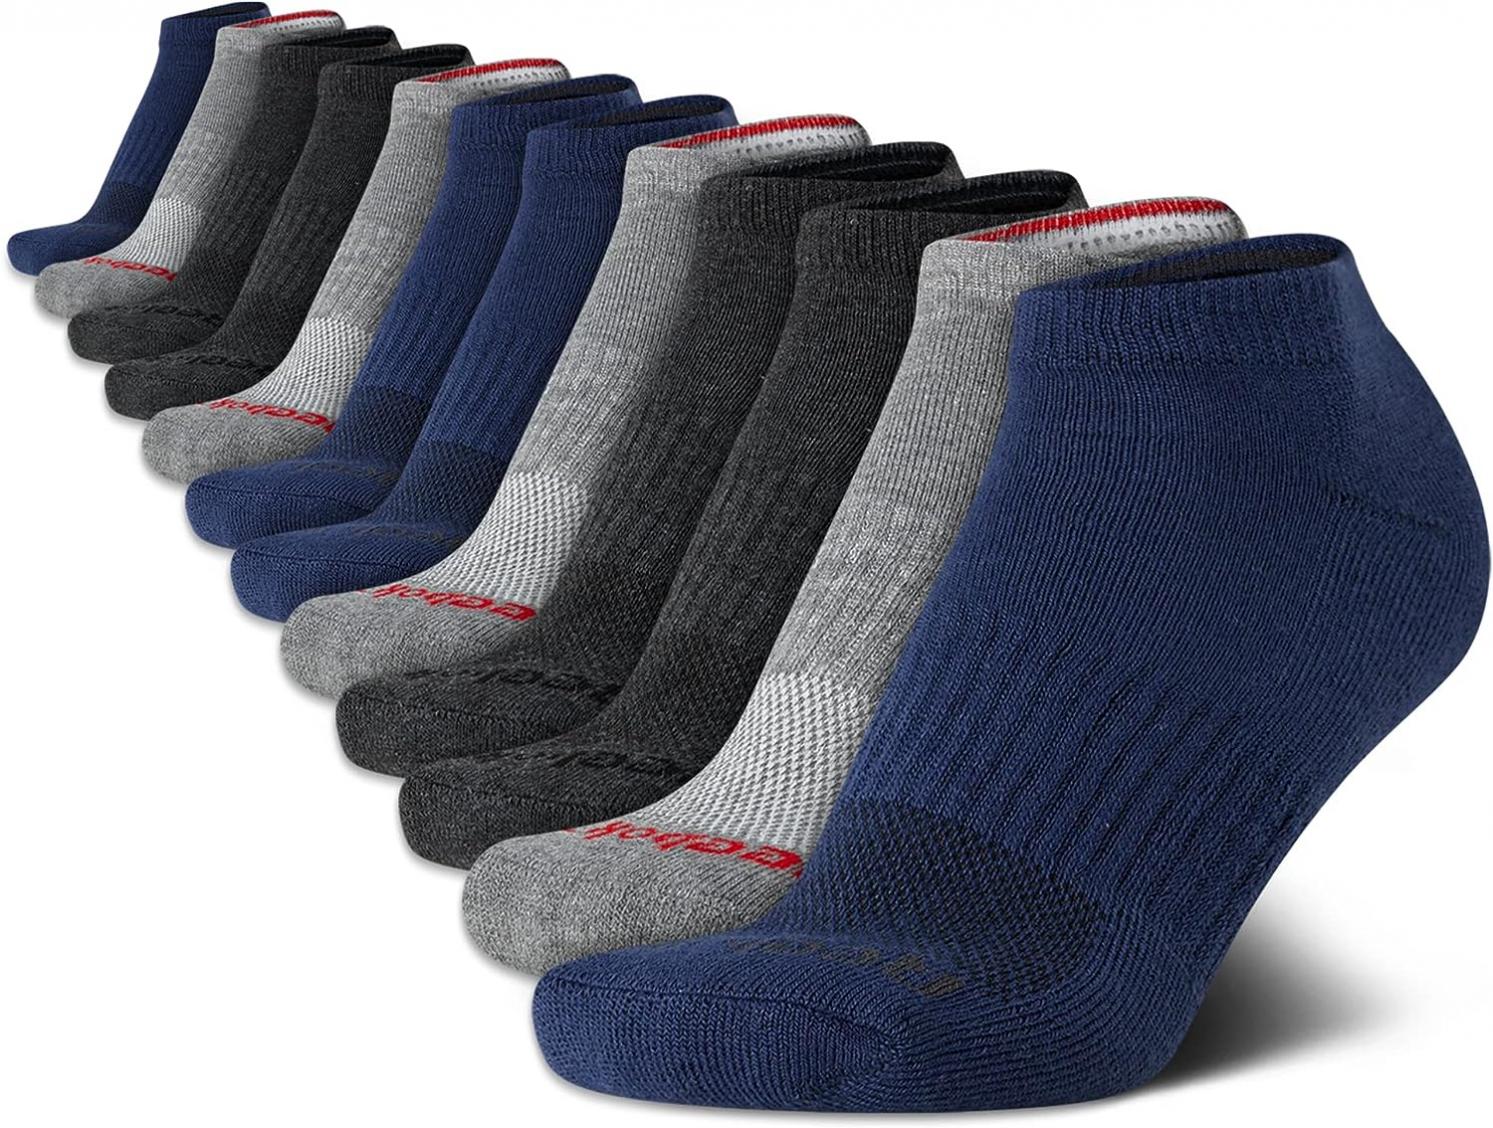 Reebok Boys' Socks - Athletic Low Cut Ankle Socks (12 Pack)